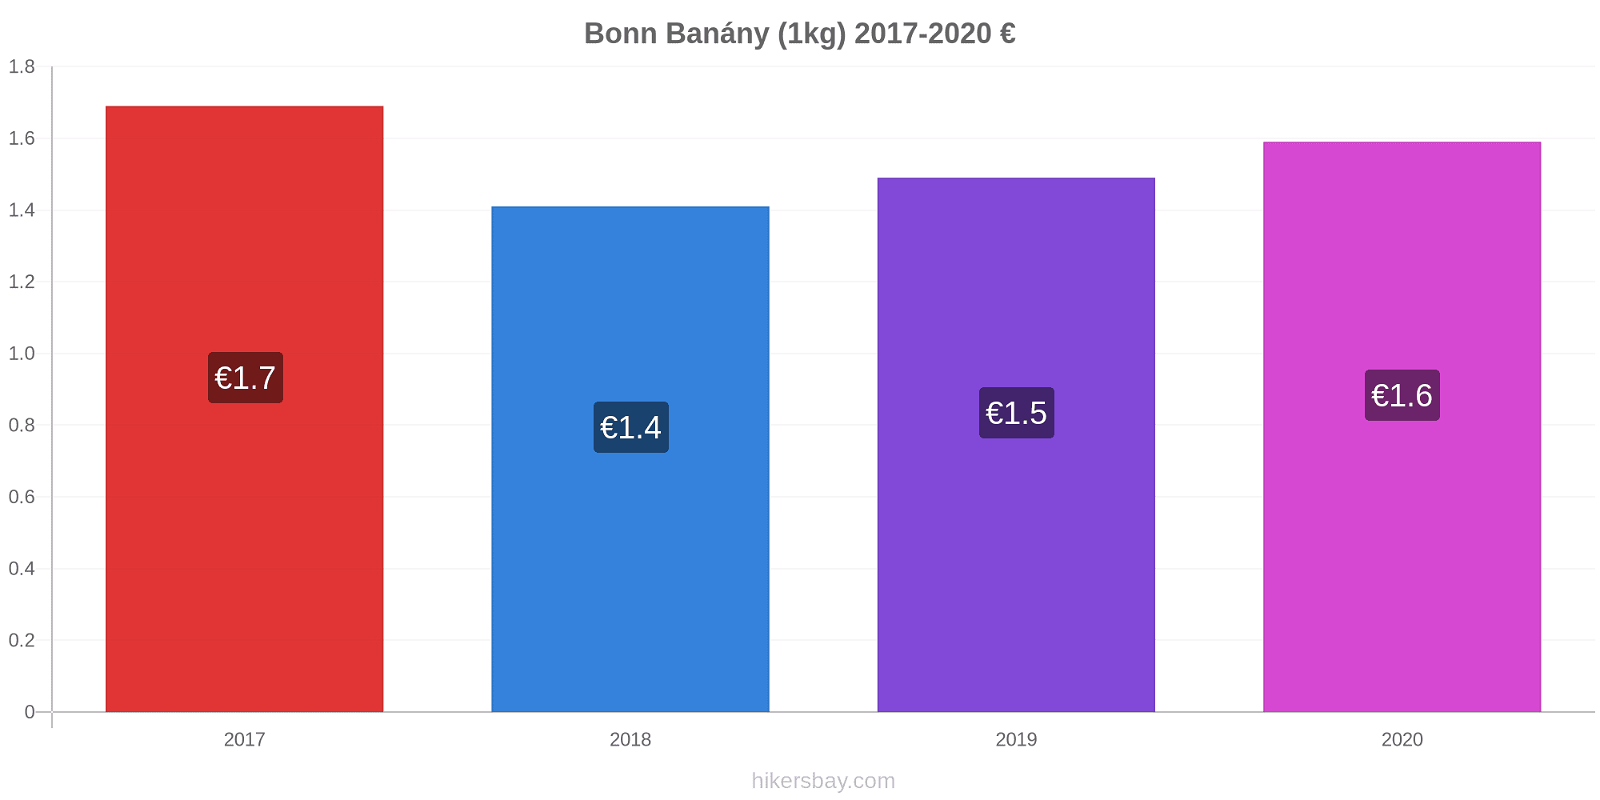 Bonn změny cen Banány (1kg) hikersbay.com